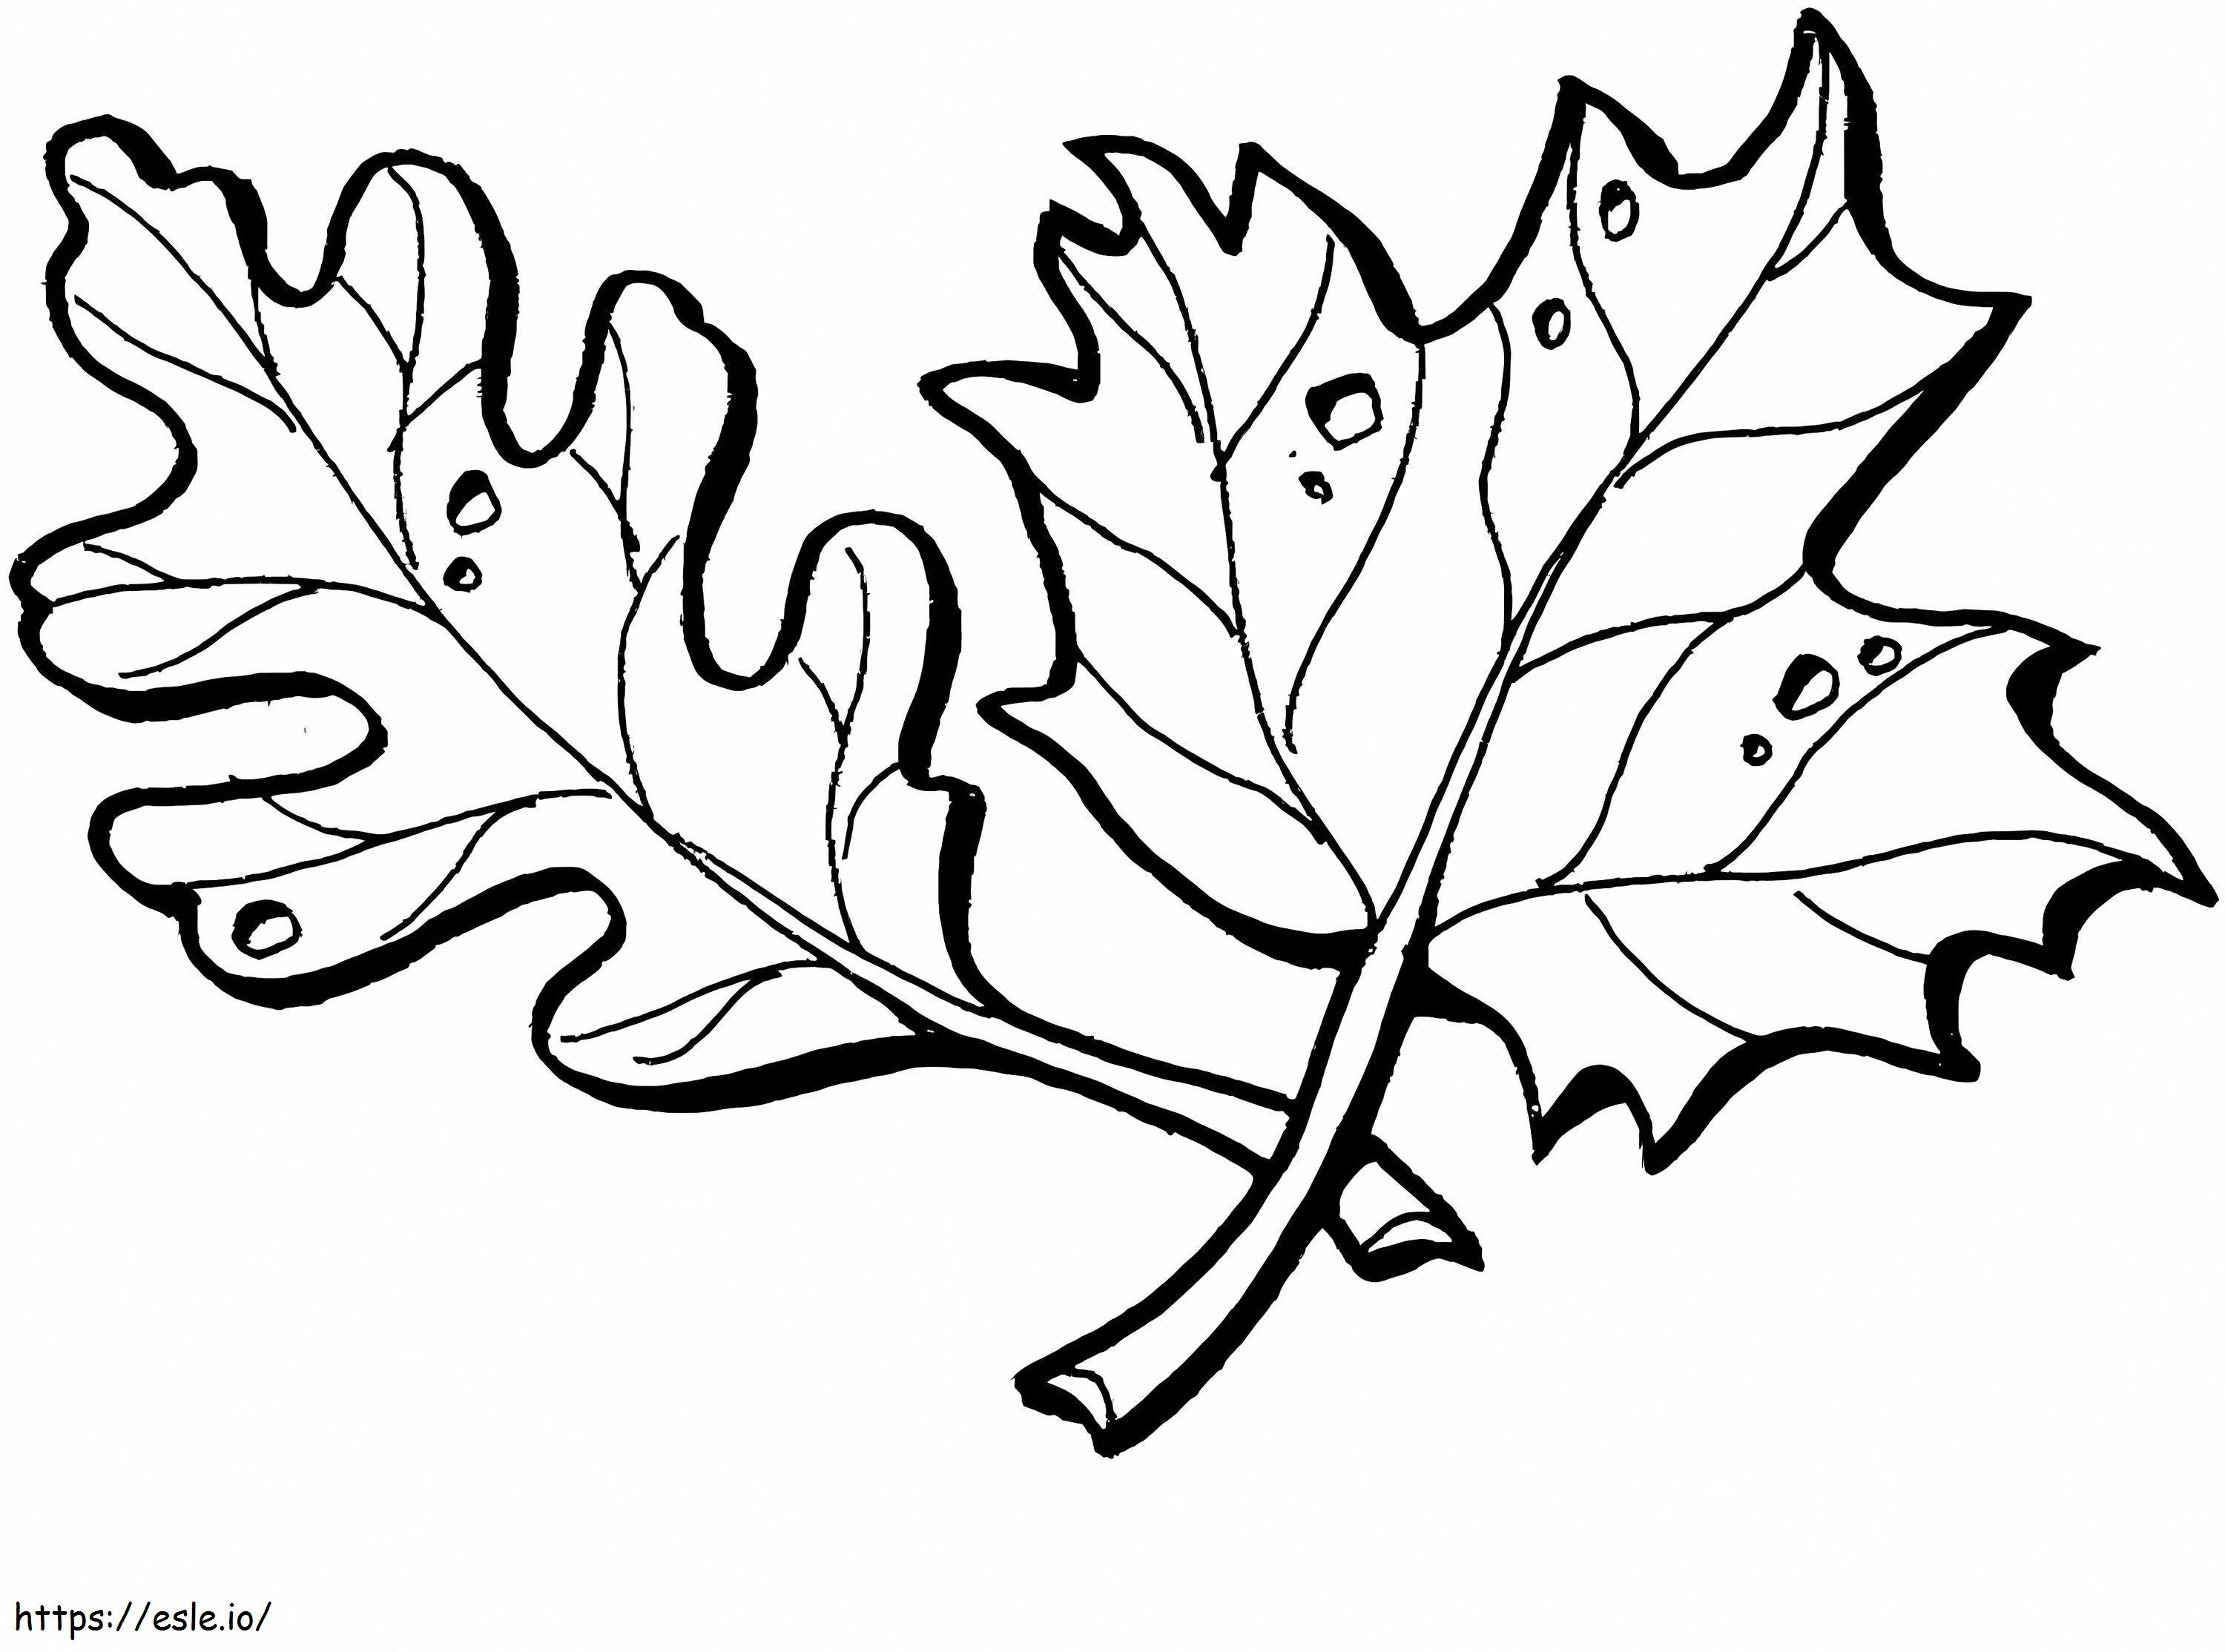 Folhas de carvalho e bordo para colorir